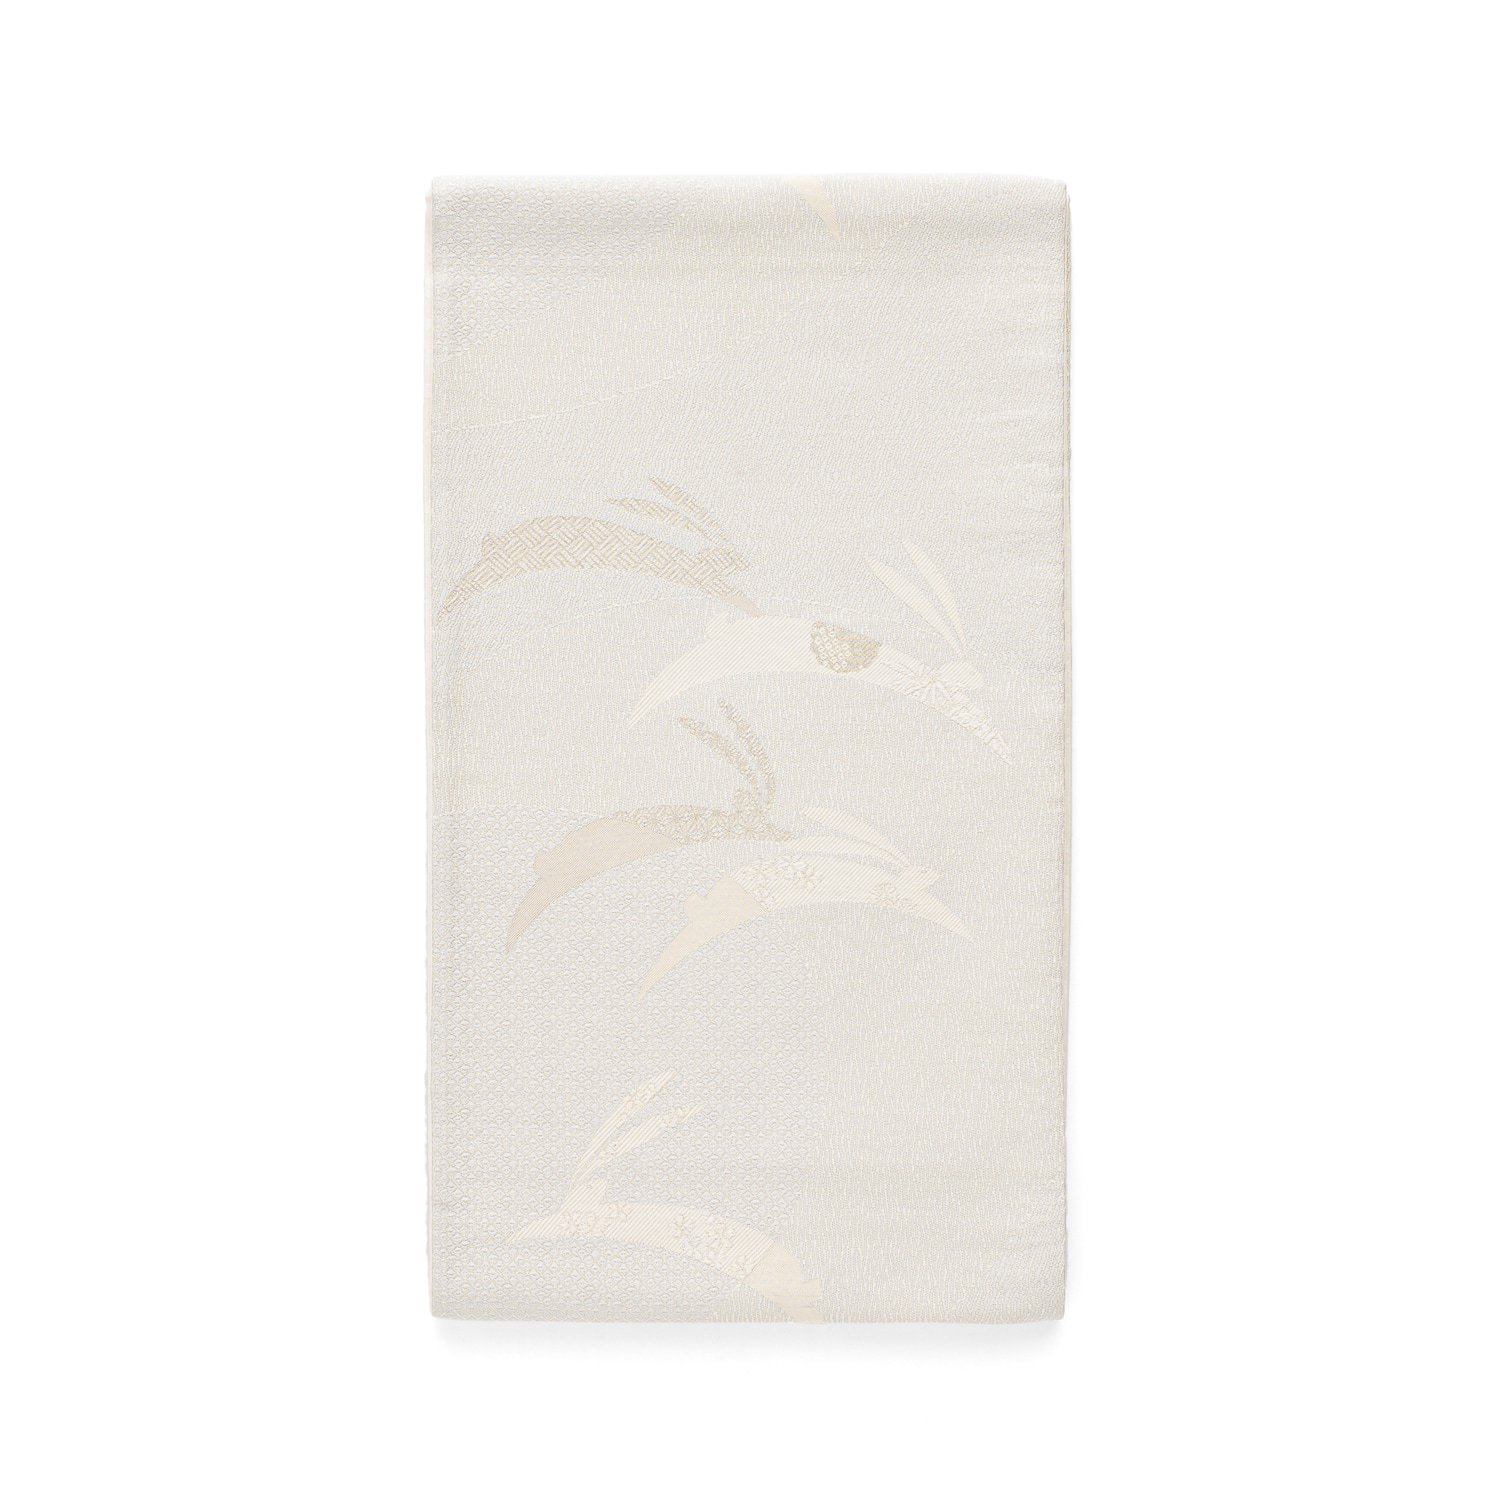 「袋帯●白うさぎ」の商品画像